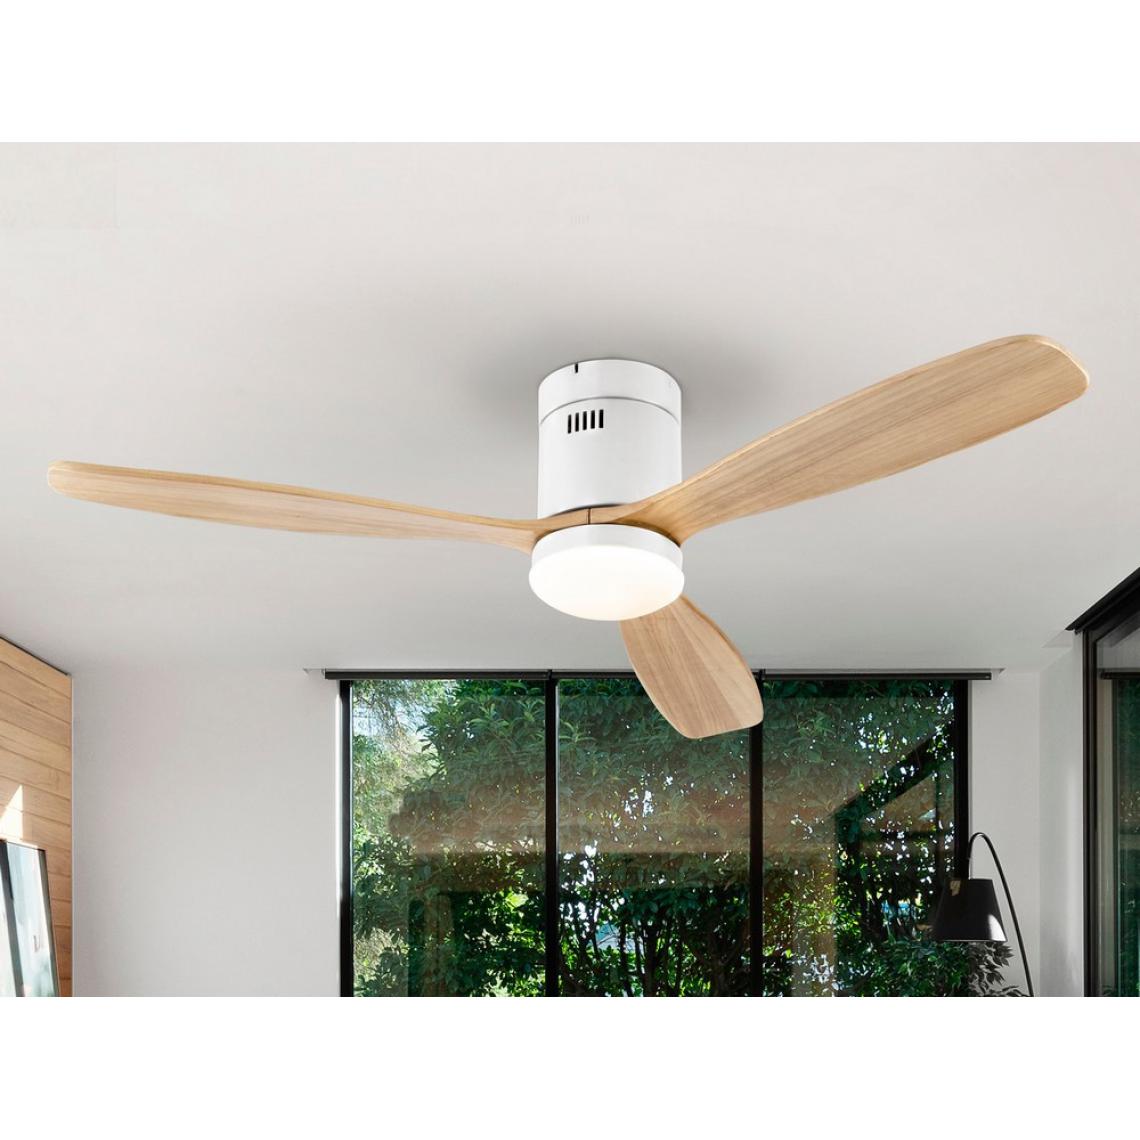 Schuller - Ventilateur de plafond ultra silencieux à 6 vitesses, blanc mat, pales en bois avec lumière LED, télécommande, minuterie et fonctions réversibles - Lampadaire